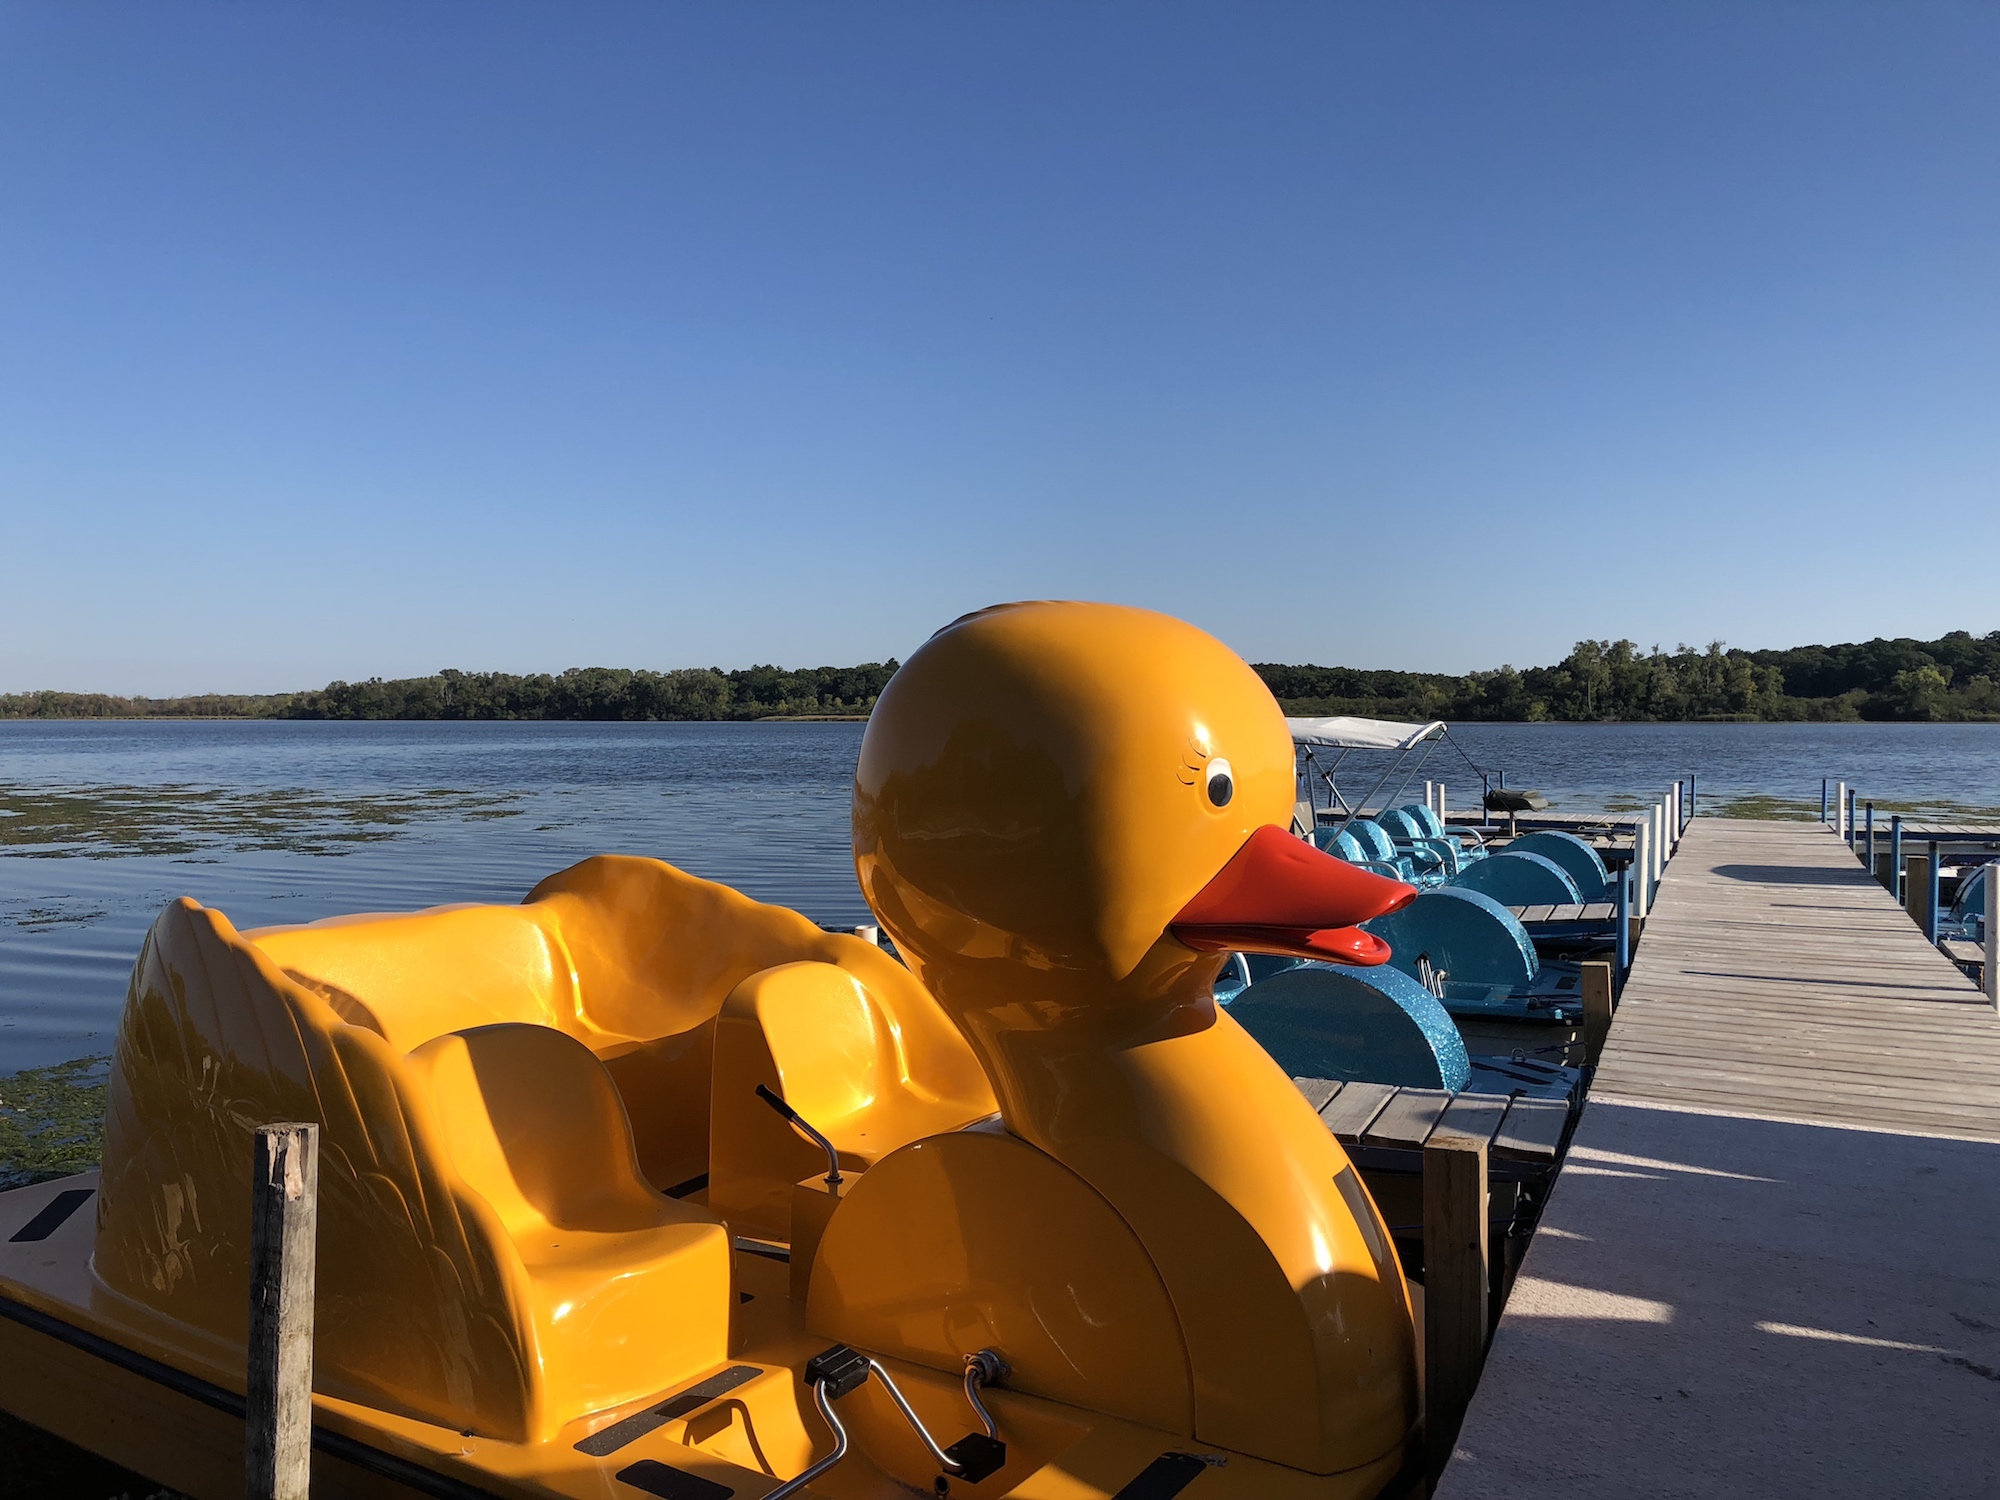 Lake Wingra on September 12, 2018.